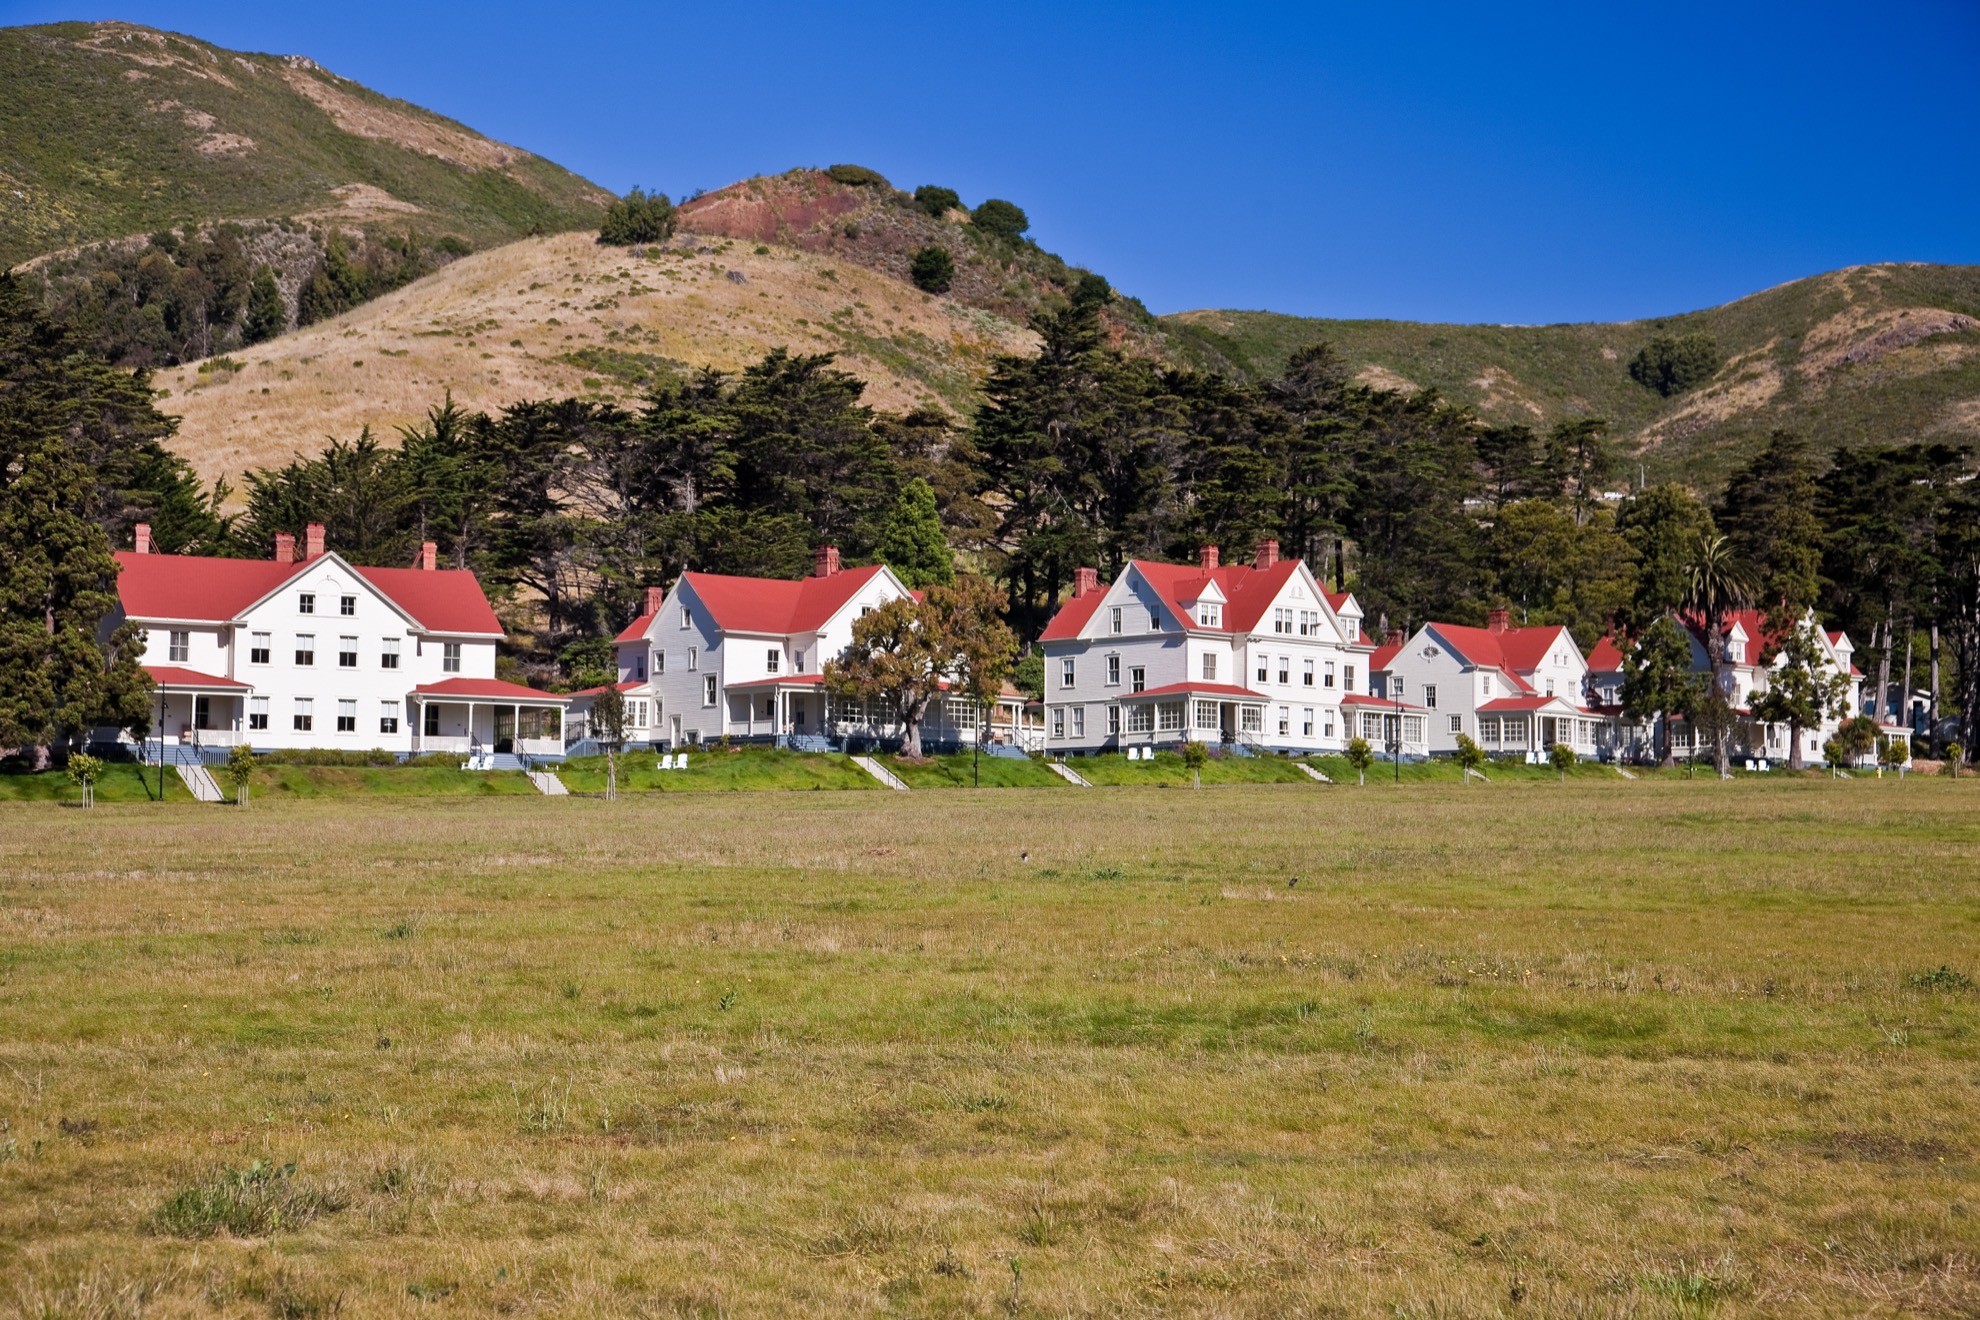 Visitando el Marin Headlands de Marin de San Francisco: 9 cosas que saber - 467